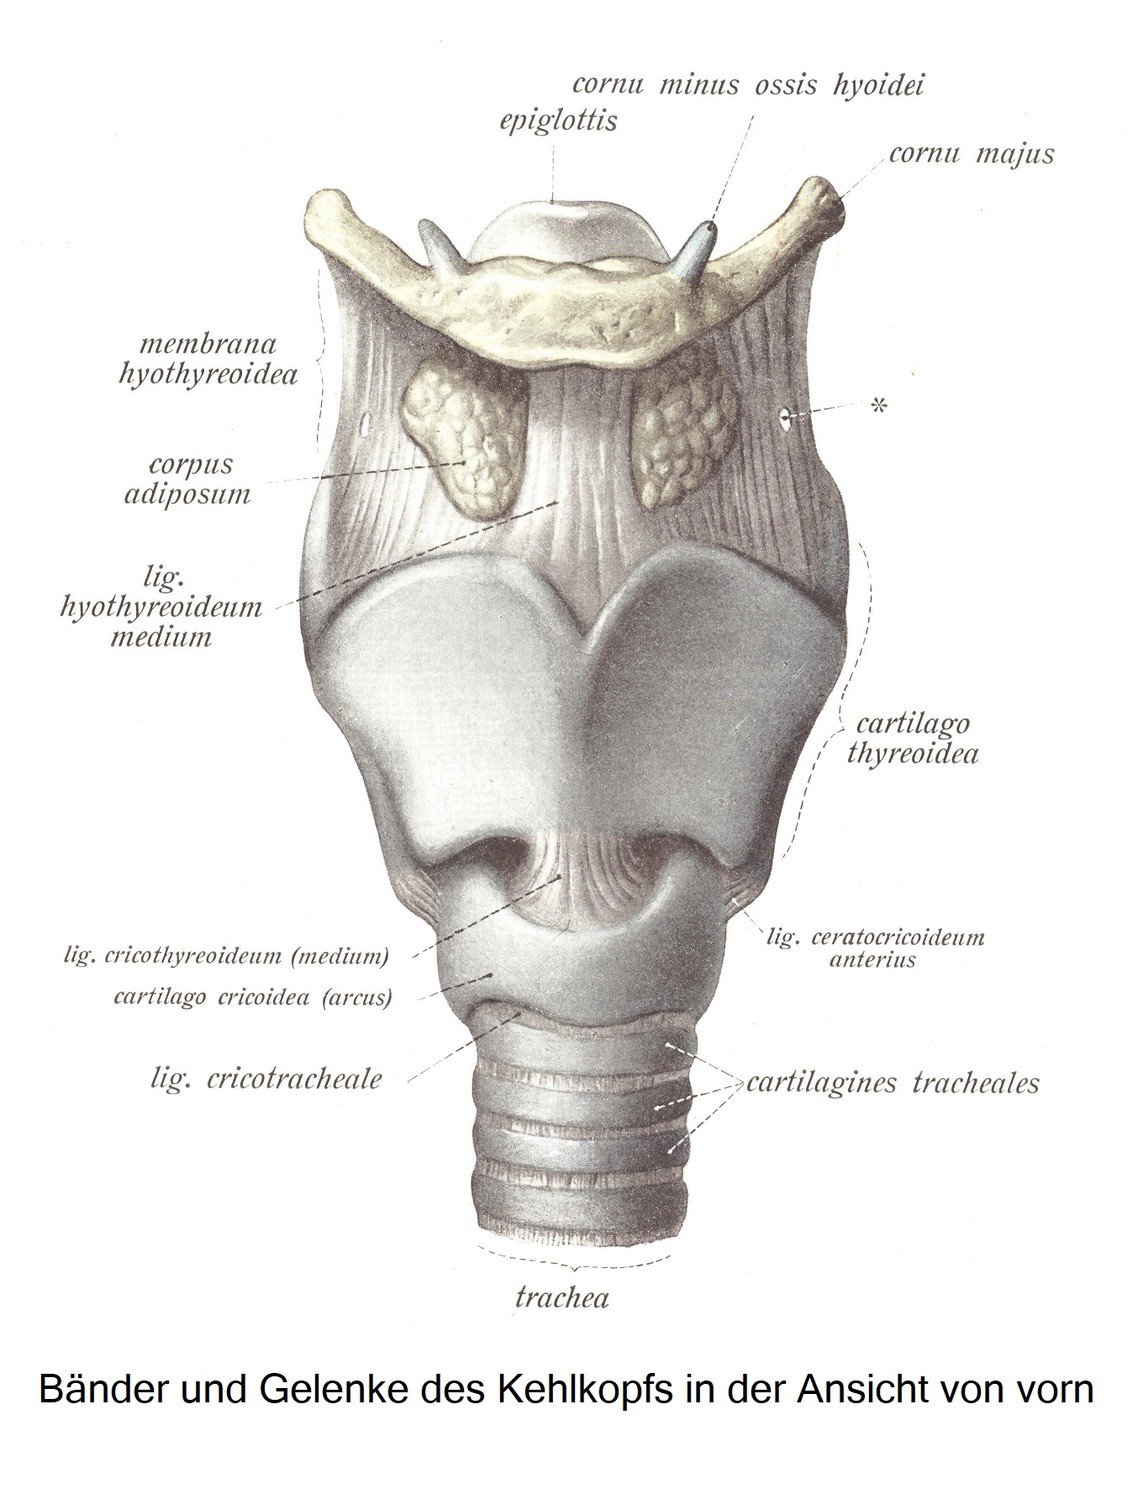 Die Gelenke und Bänder des Kehlkopfs, articulationes et ligamenta laryngis